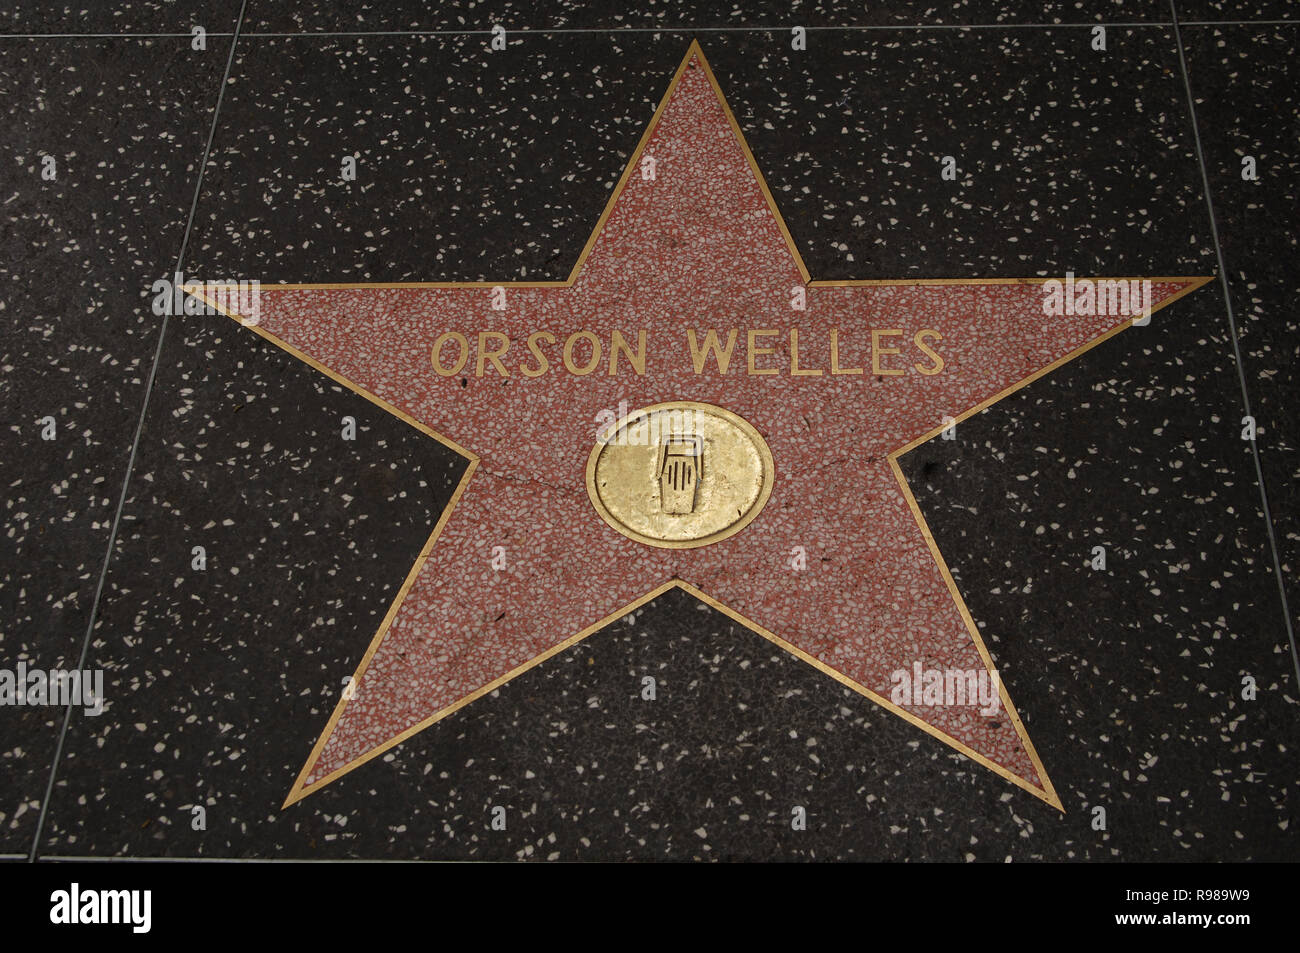 ORSON WELLES (1915-1985). Actor y director de cine estadounidense. ESTRELLA DE ORSON WELLES en el PASEO DE LA FAMA (THE WALK OF FAME) en Hollywood Boulevard. HOLLYWOOD. LOS ANGELES. Estado de California. Estados Unidos. Stock Photo